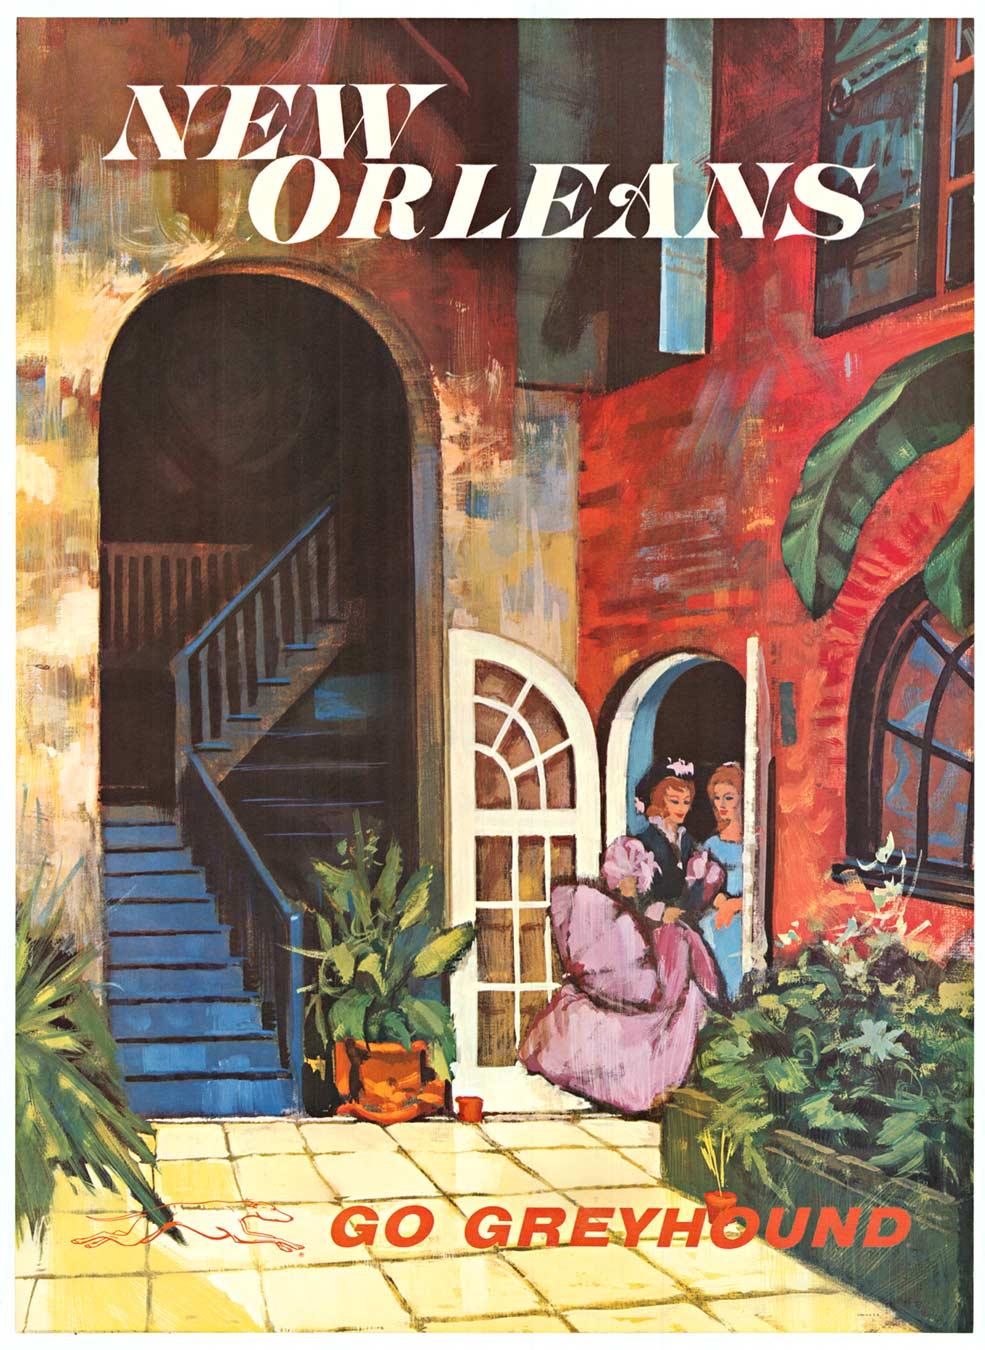 Originales Vintage-Reiseplakat "Go Greyhound" von New Orleans